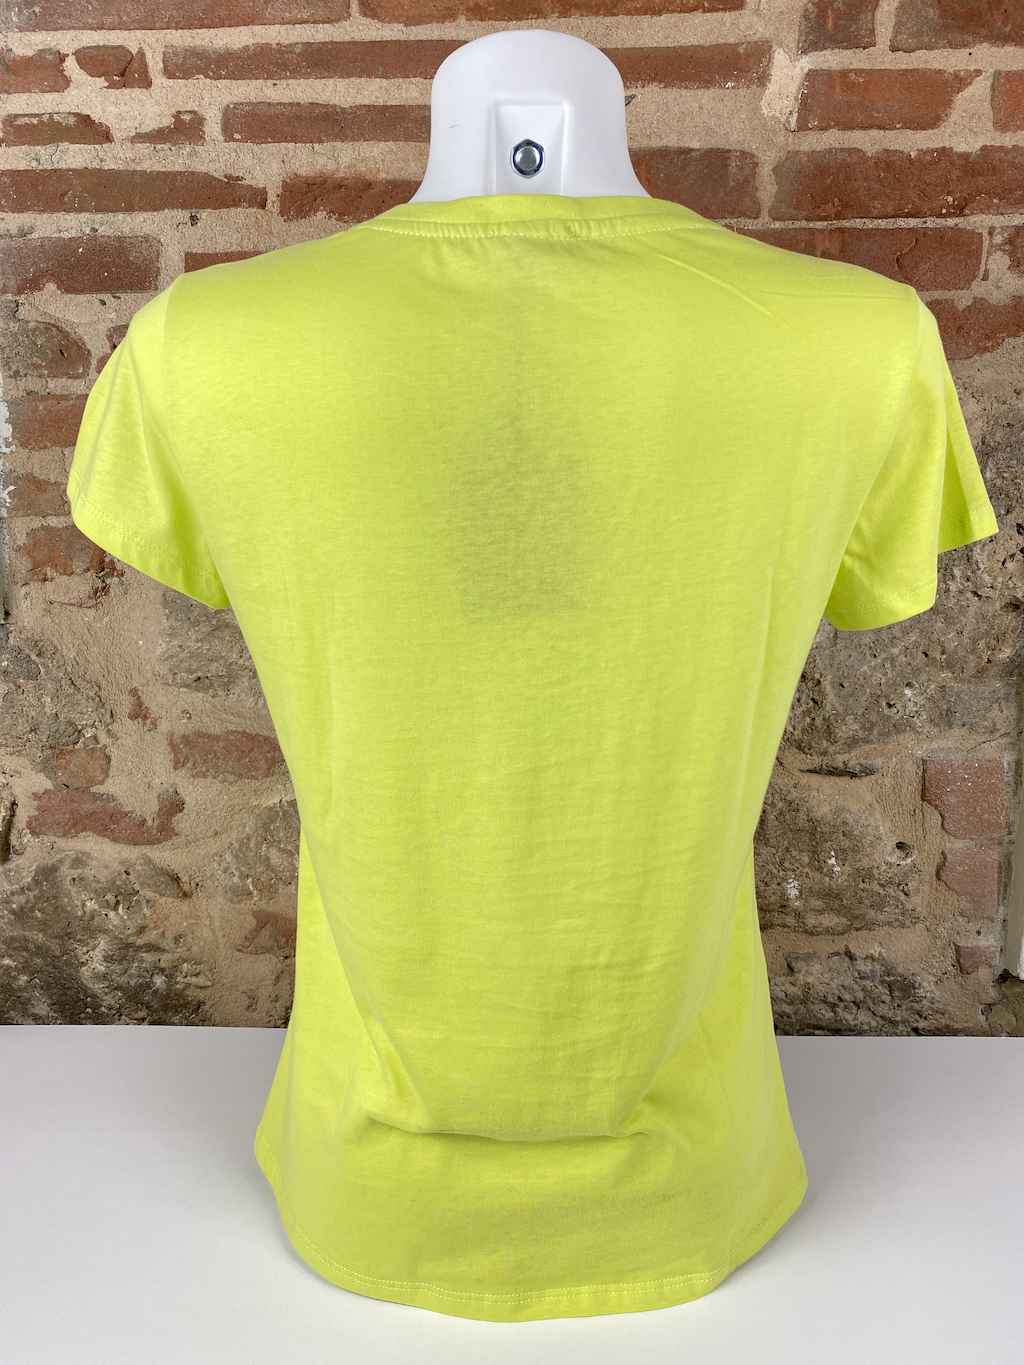 T-shirt cotone mezza manica. Stampa frontale.  Composizione: 95% cotone, 5% elastane. Colori: rosa, verde, bianco.